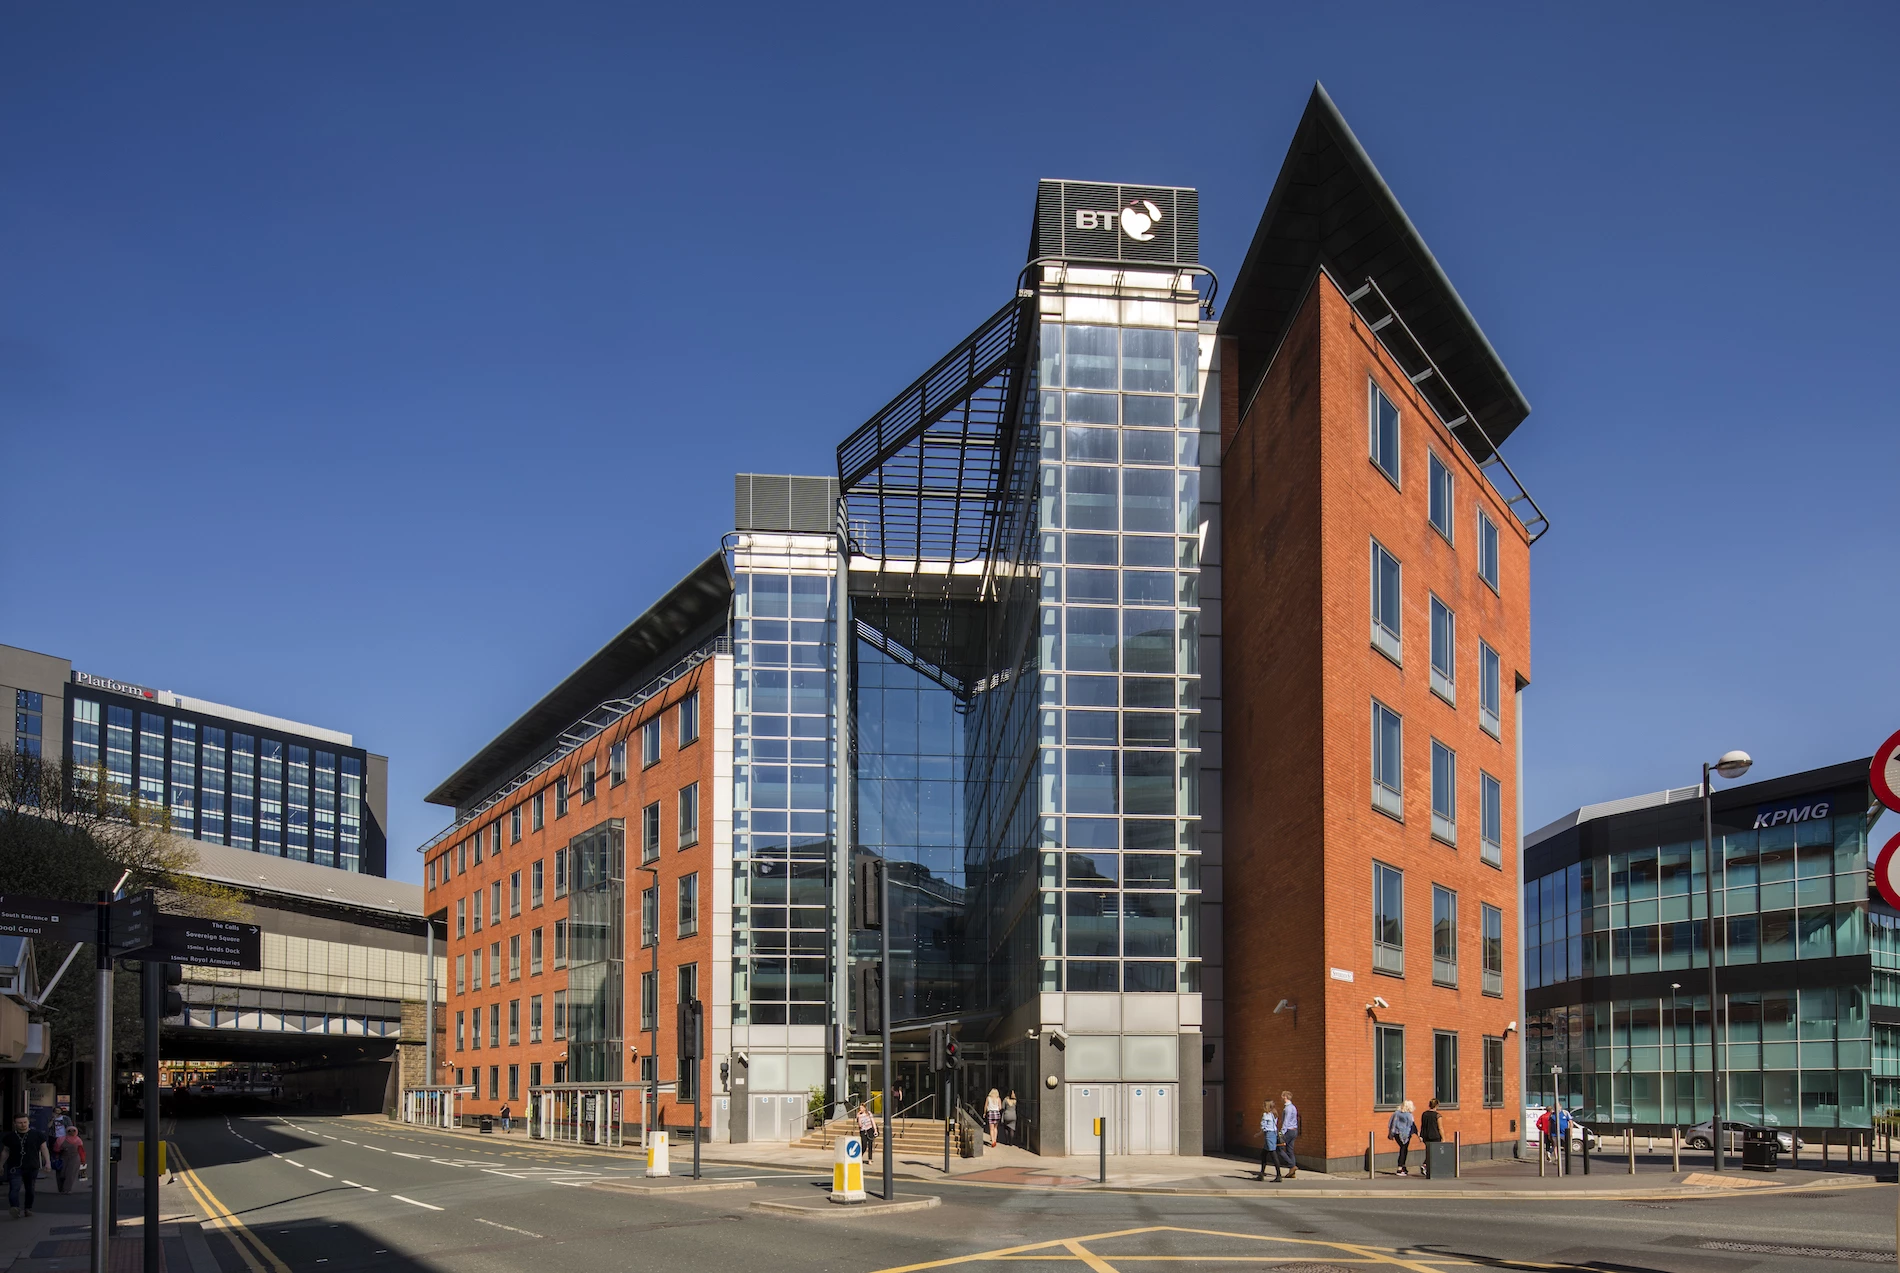  BT’s Headquarters in Leeds